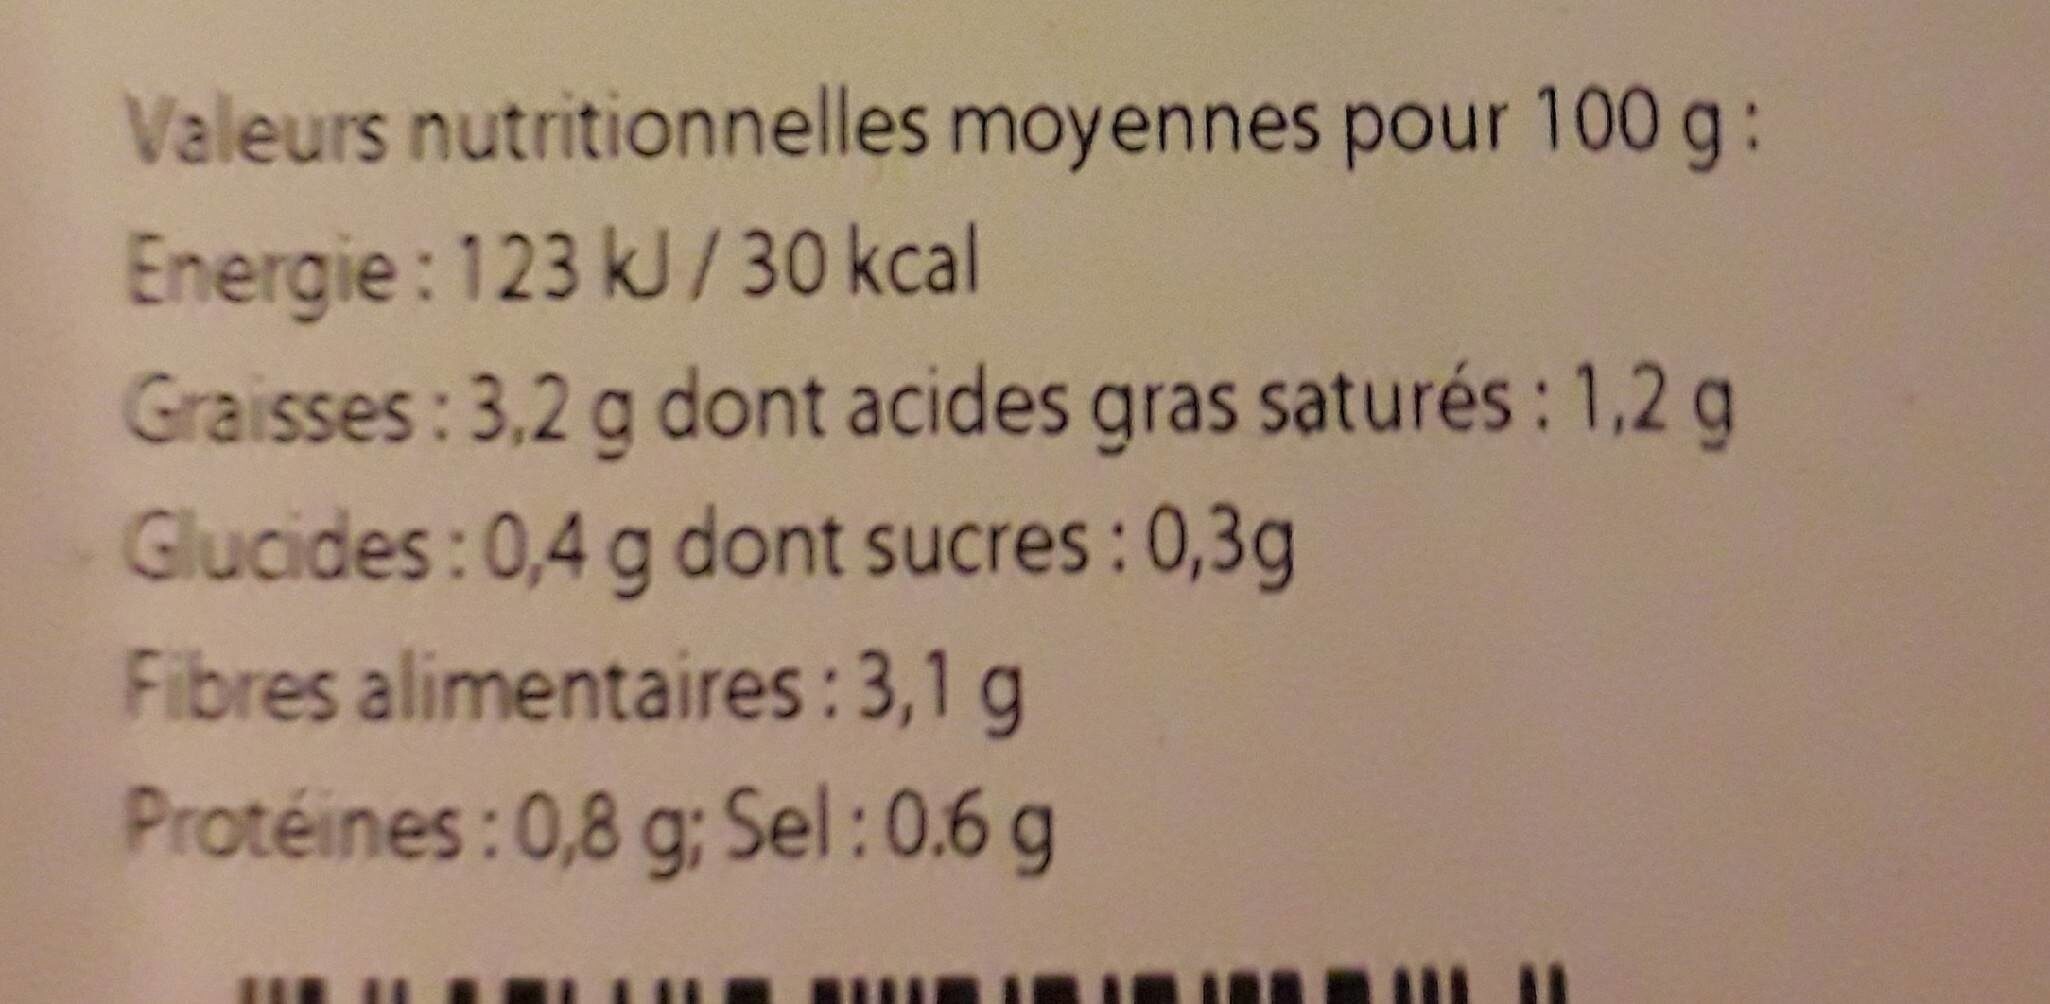 La Choucroute cuisinée - Nutrition facts - fr